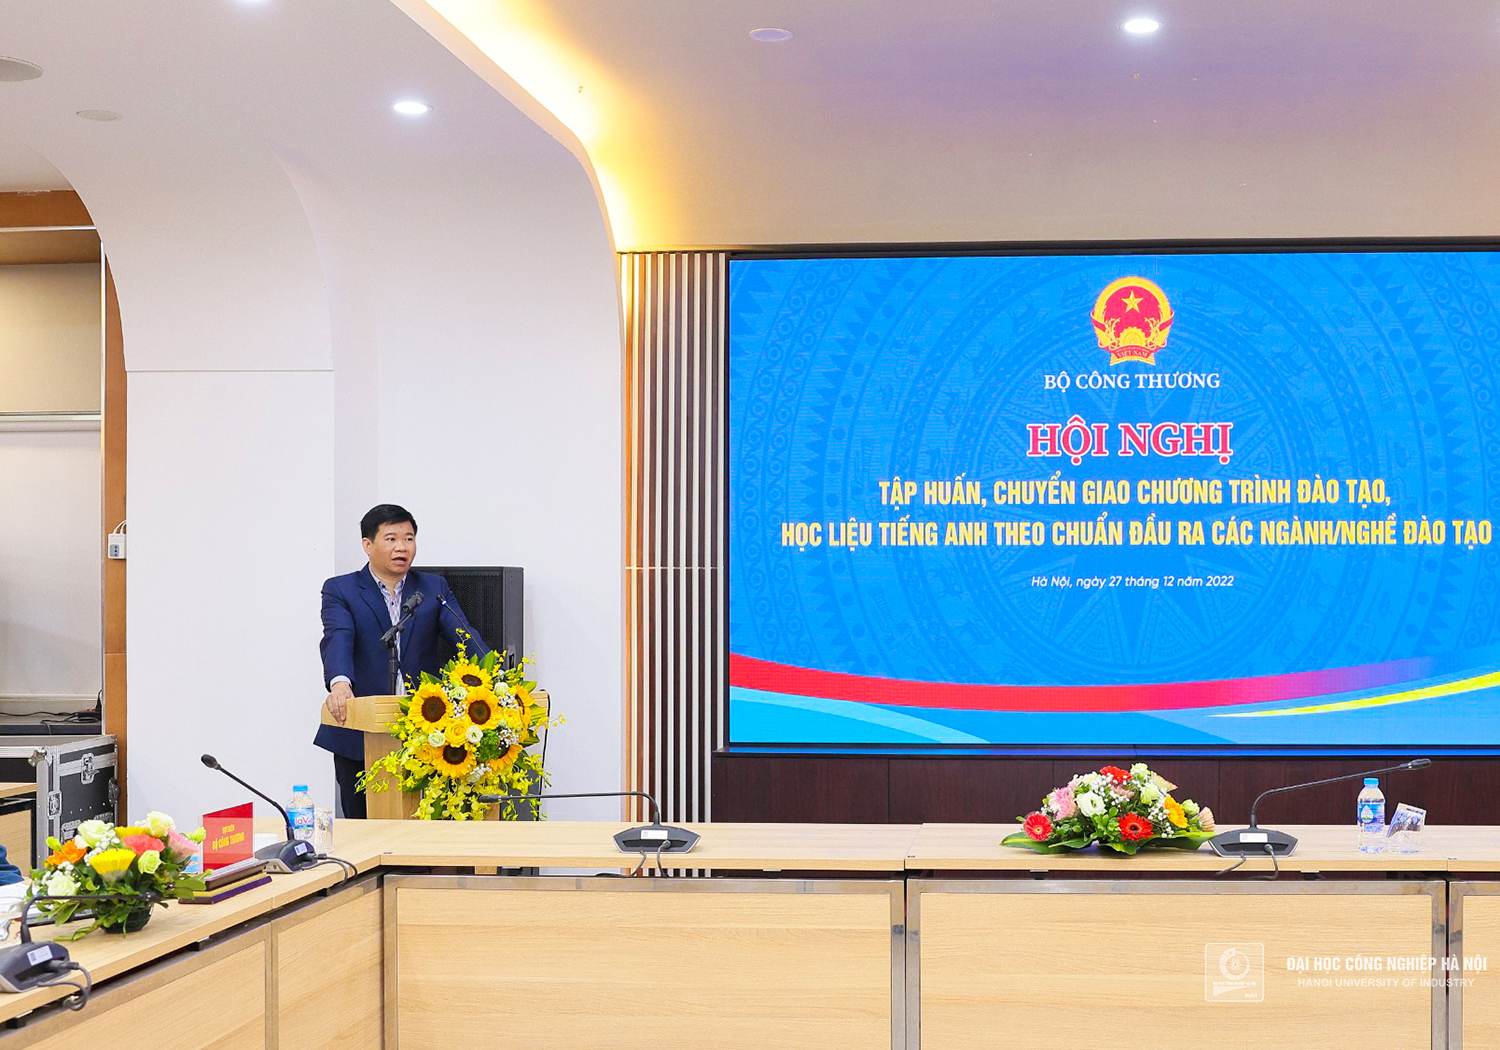 Đại học Công nghiệp Hà Nội chuyển giao 34 bộ chương trình - học liệu tiếng Anh cho các trường trực thuộc Bộ Công Thương